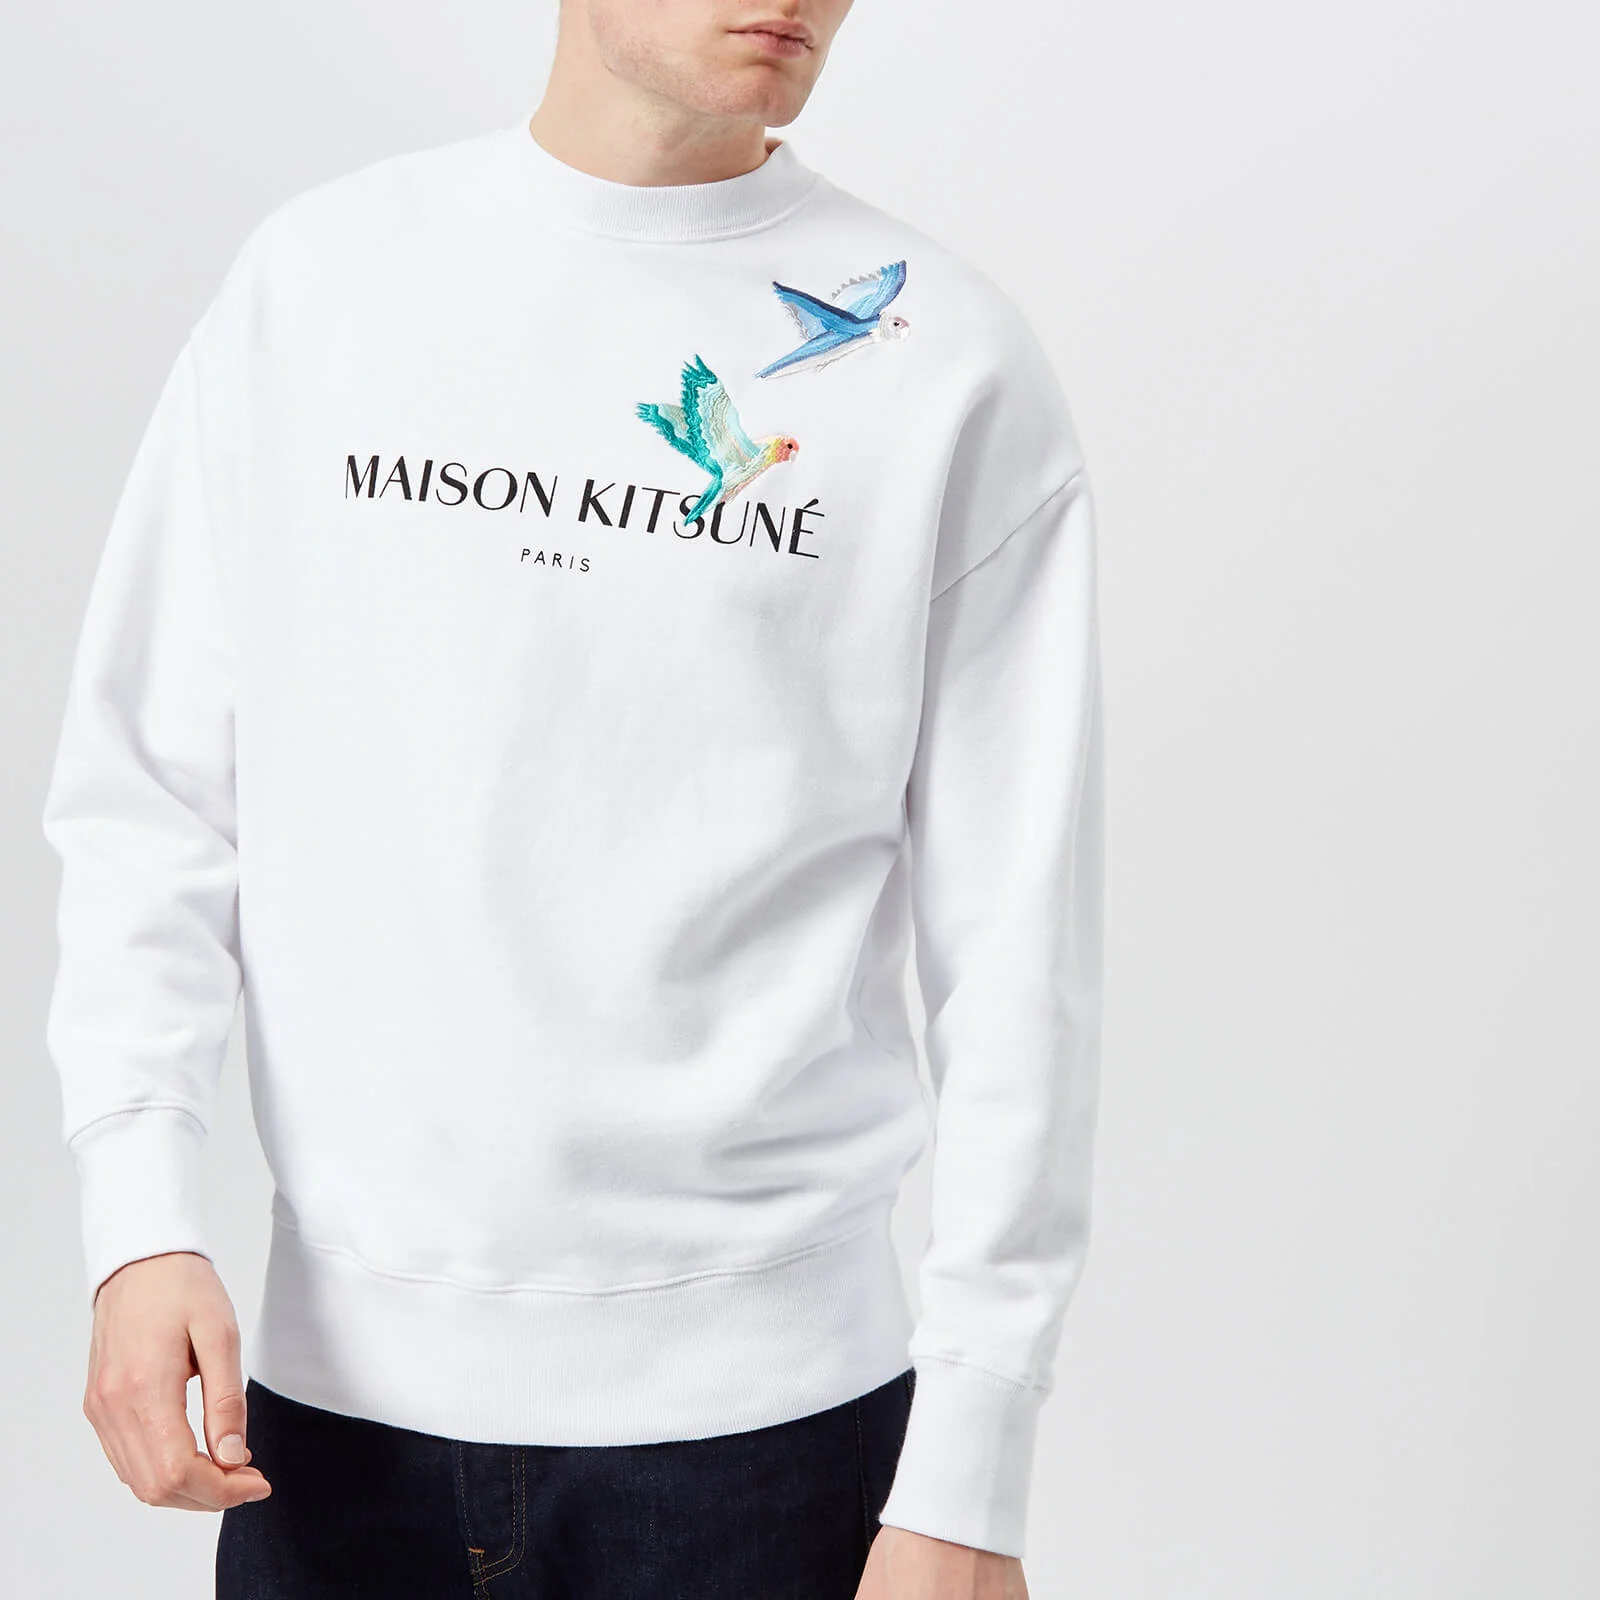 Maison Kitsuné Men's Lovebirds Sweatshirt - White Image 1